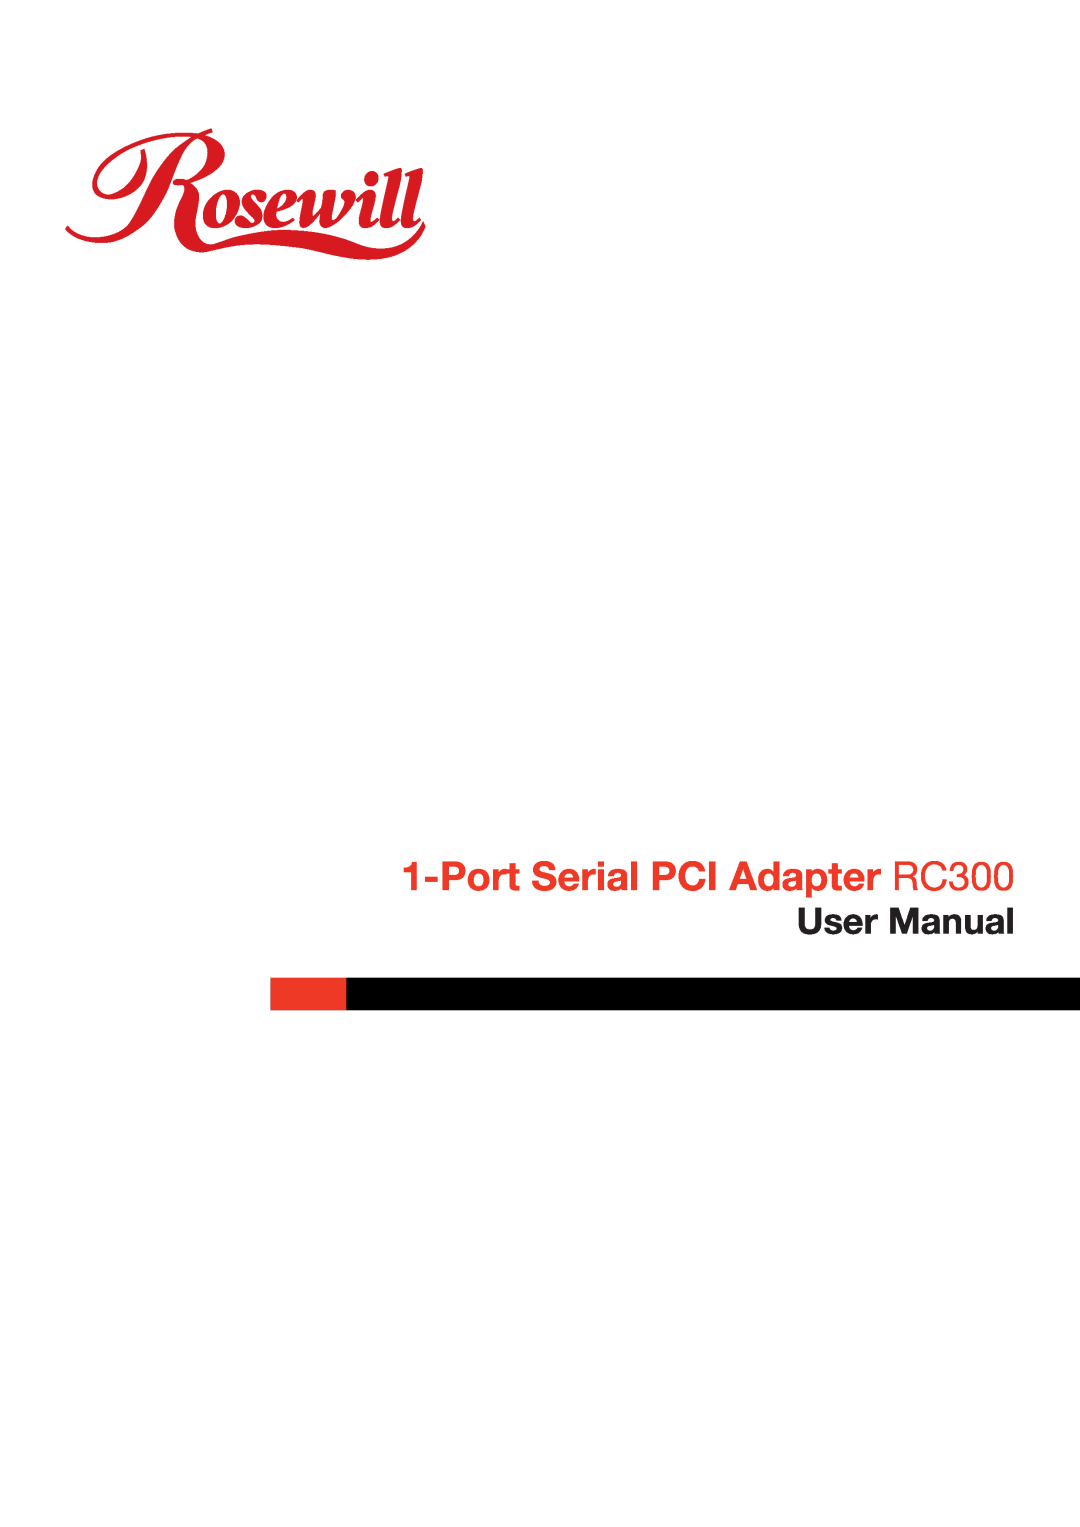 Rosewill RC-300 user manual Port Serial PCI Adapter RC300, User Manual 